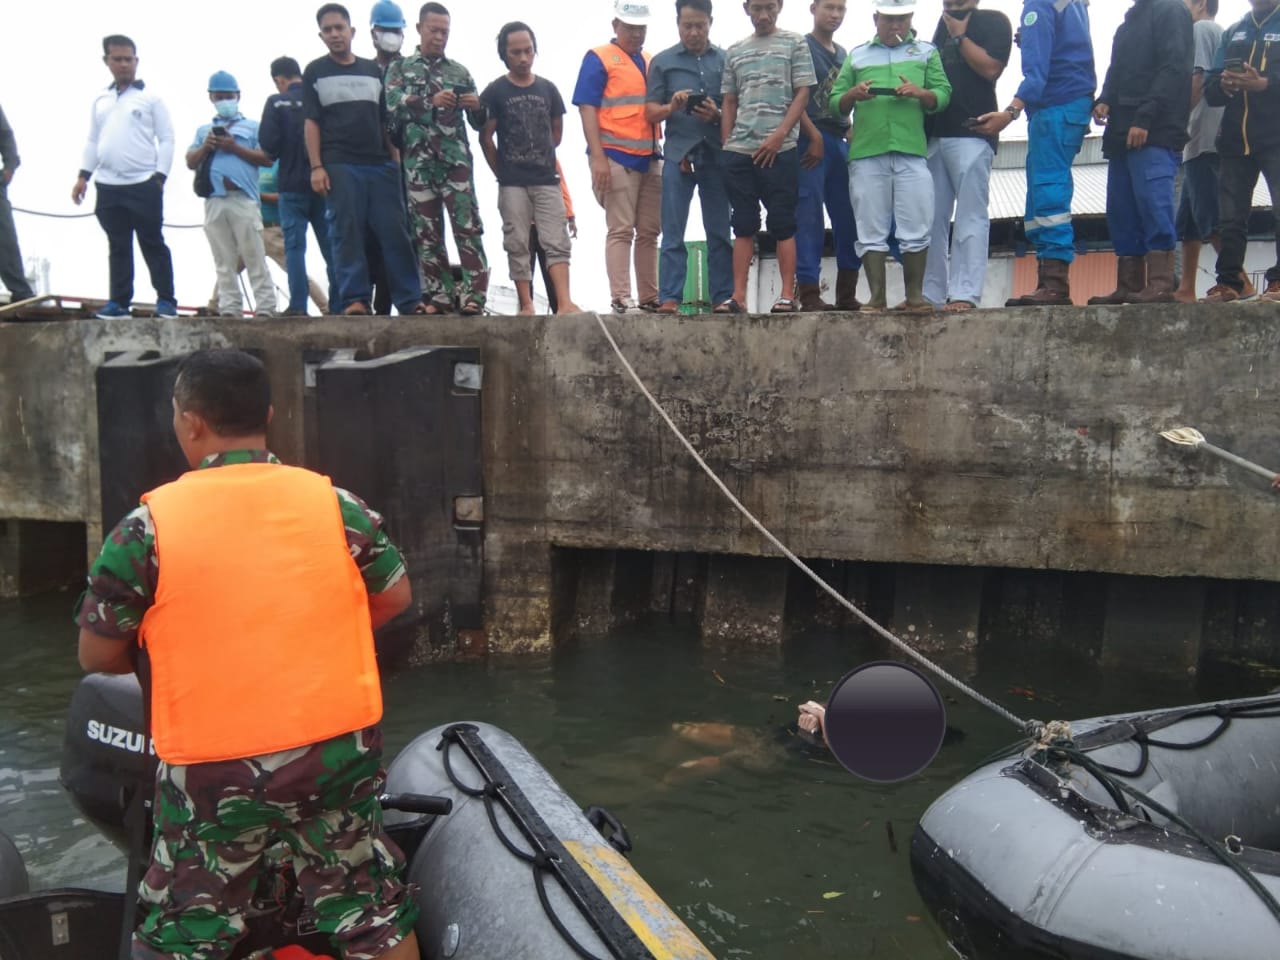 BREAKING NEWS! Mayat Mengapung di Perairan Pulau Baai